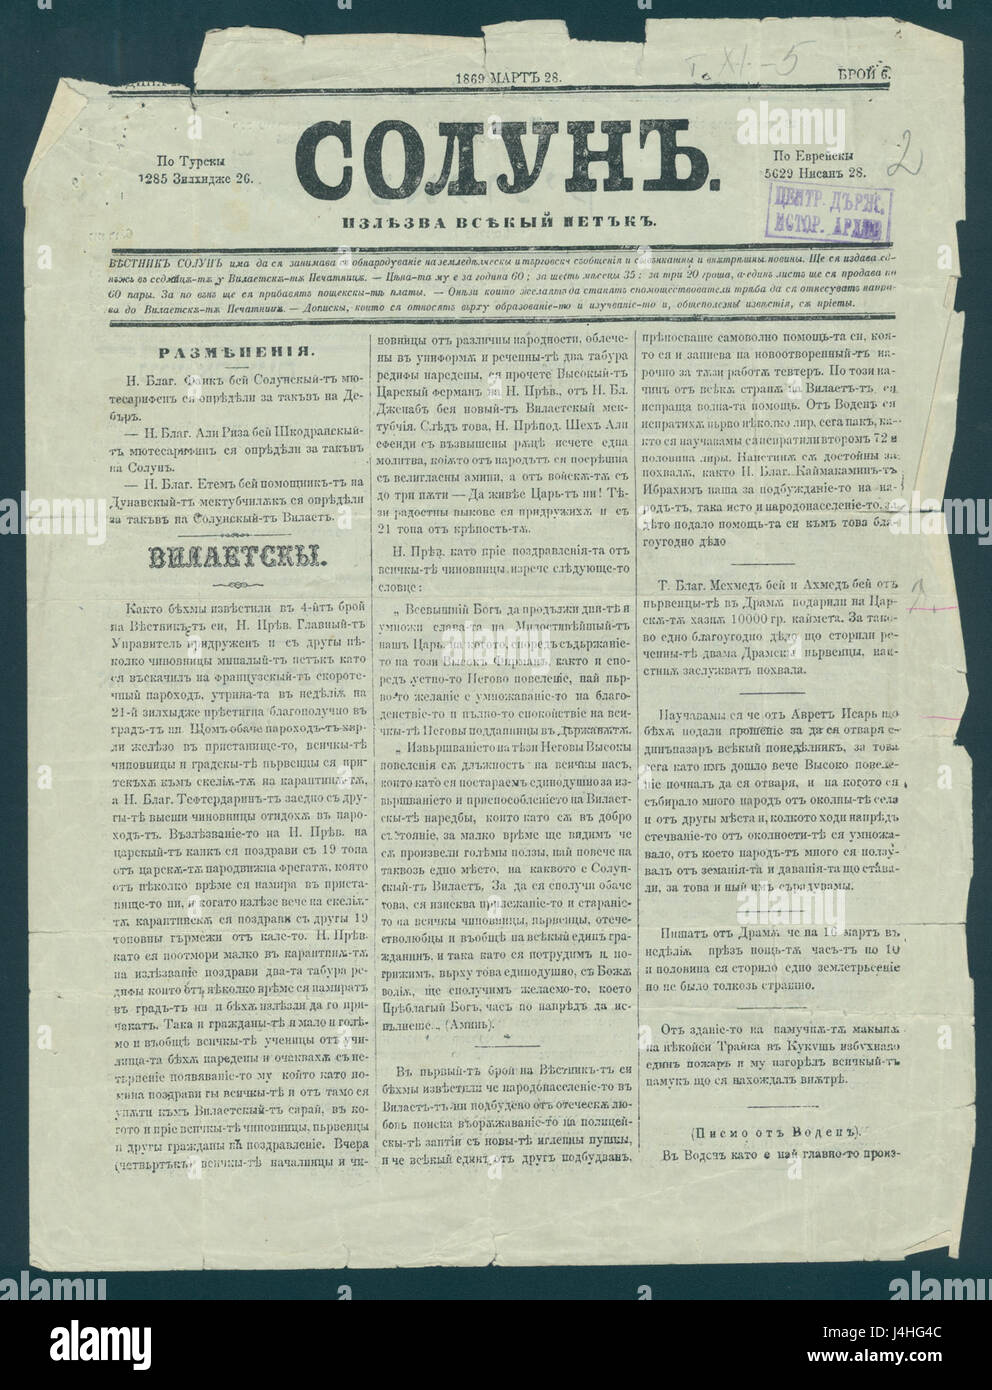 Solun Zeitung 1869-03-28 in bulgarischer Sprache Stockfoto